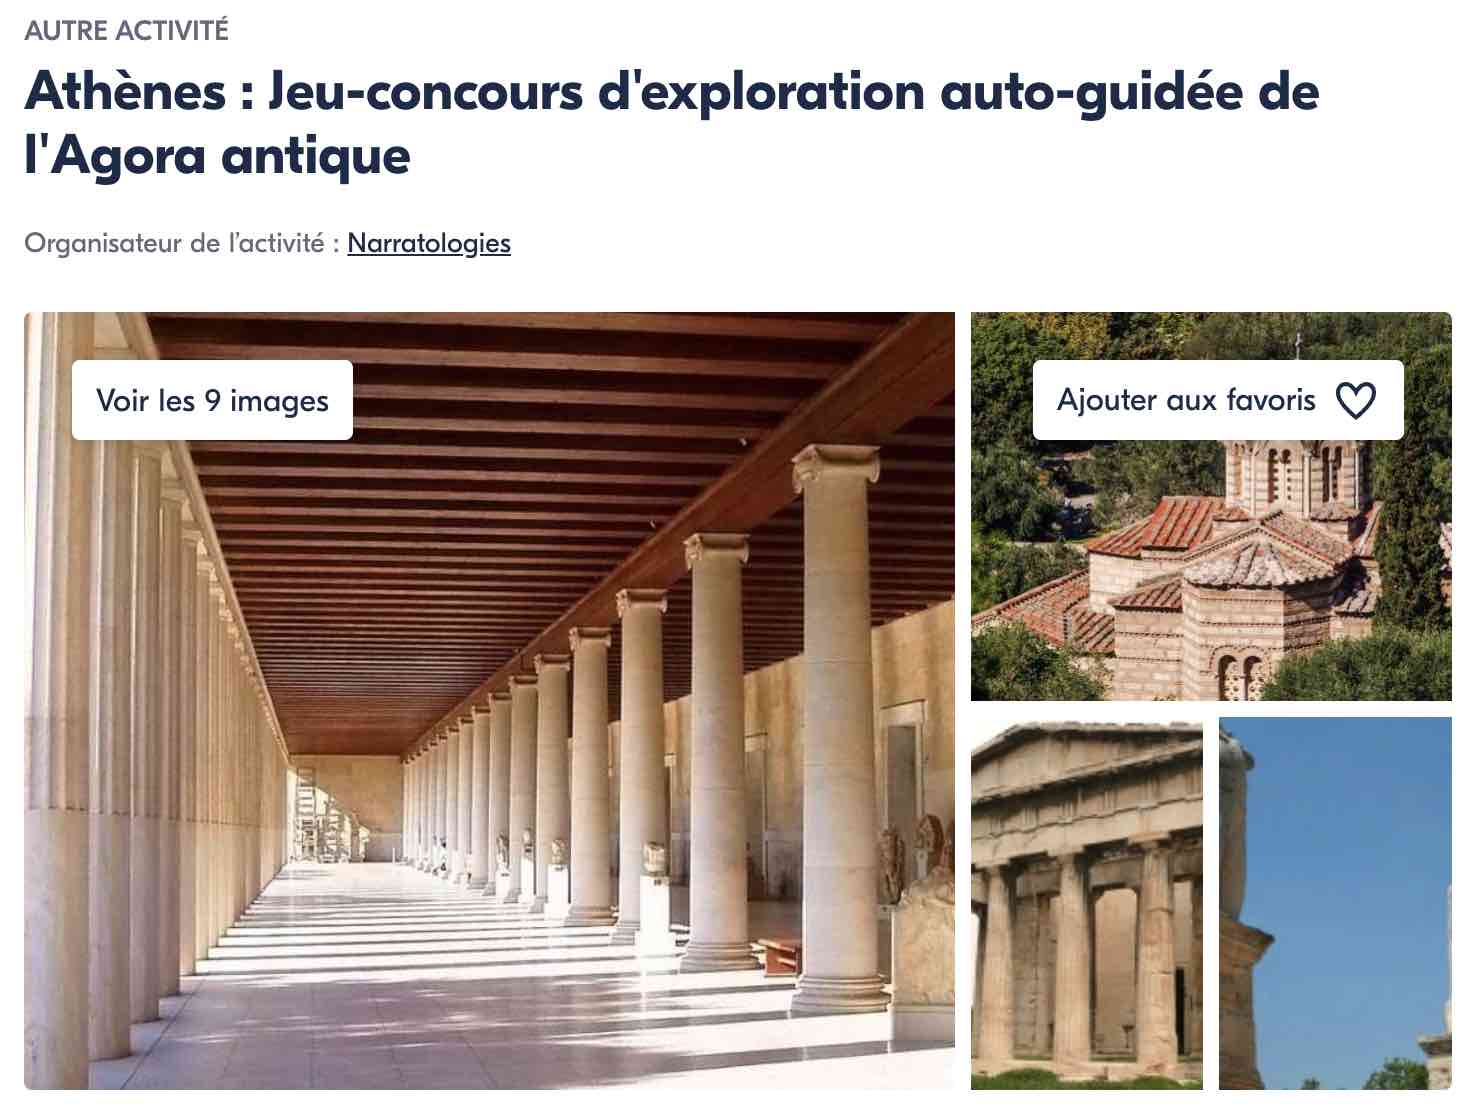 activite-agora-antique-athenes-exploration-auto-guidee